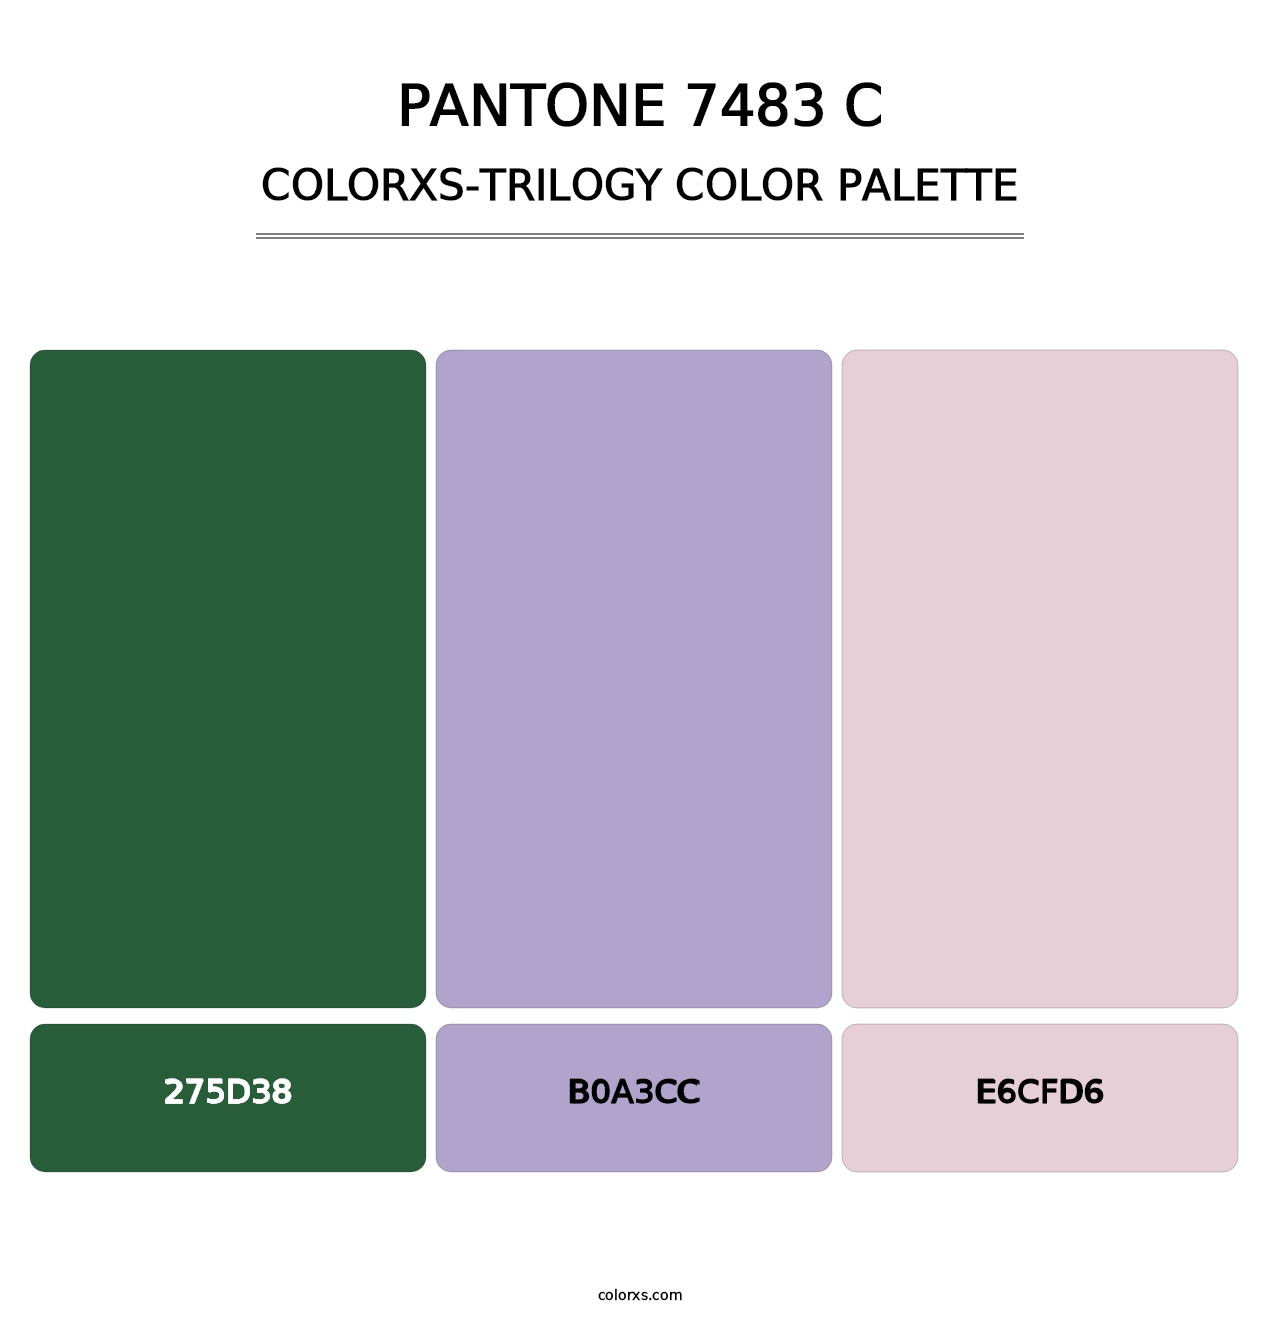 PANTONE 7483 C - Colorxs Trilogy Palette